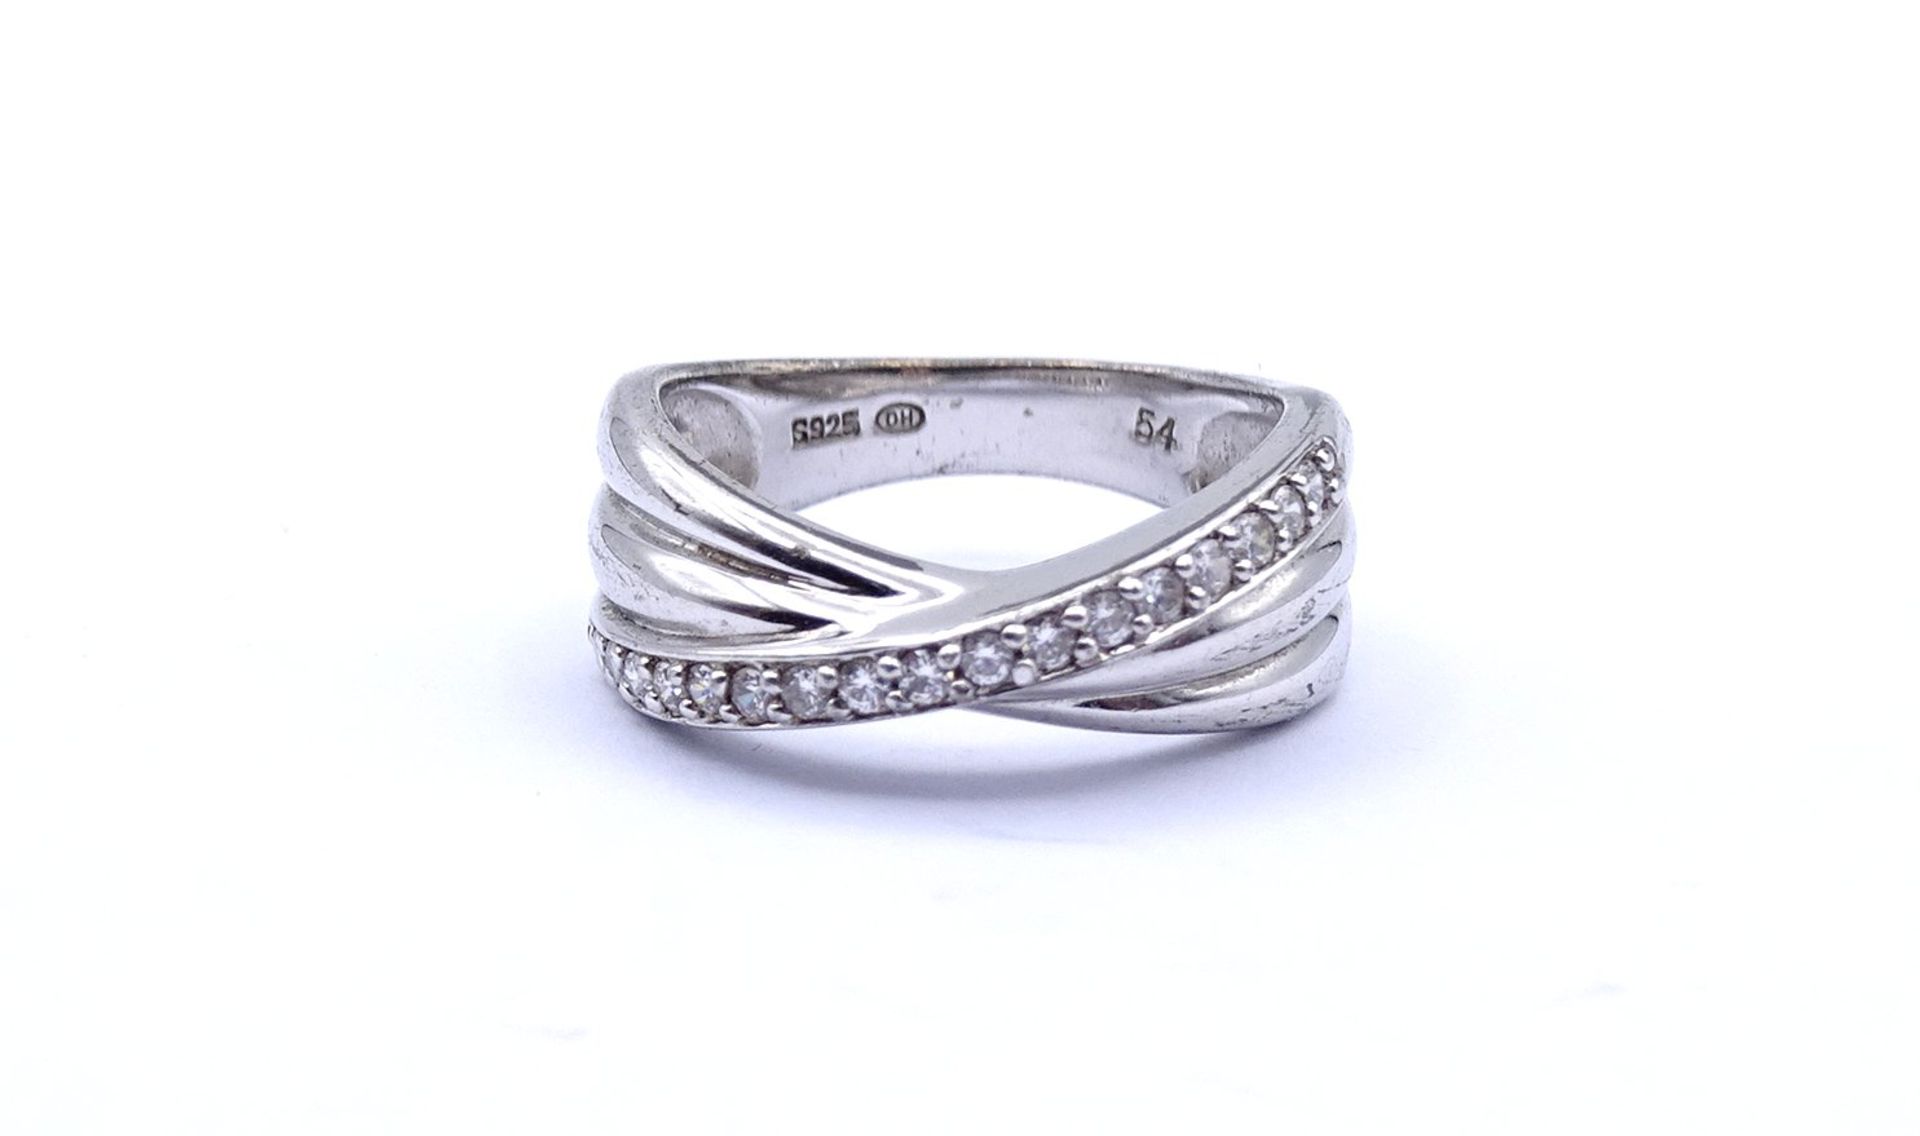 925er Silber Ring mit klaren Steinen, 4,6g., RG 54